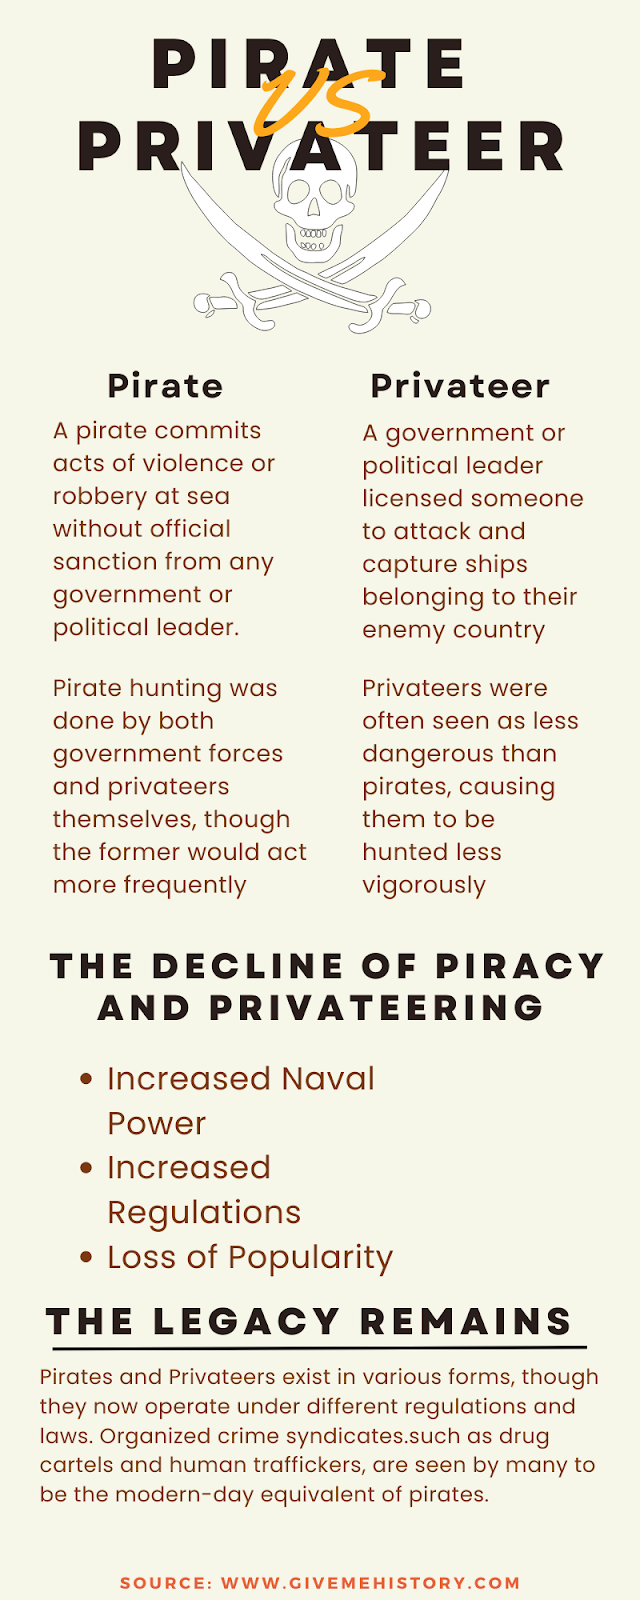 Pirat və Privateer: Fərqi Bilin